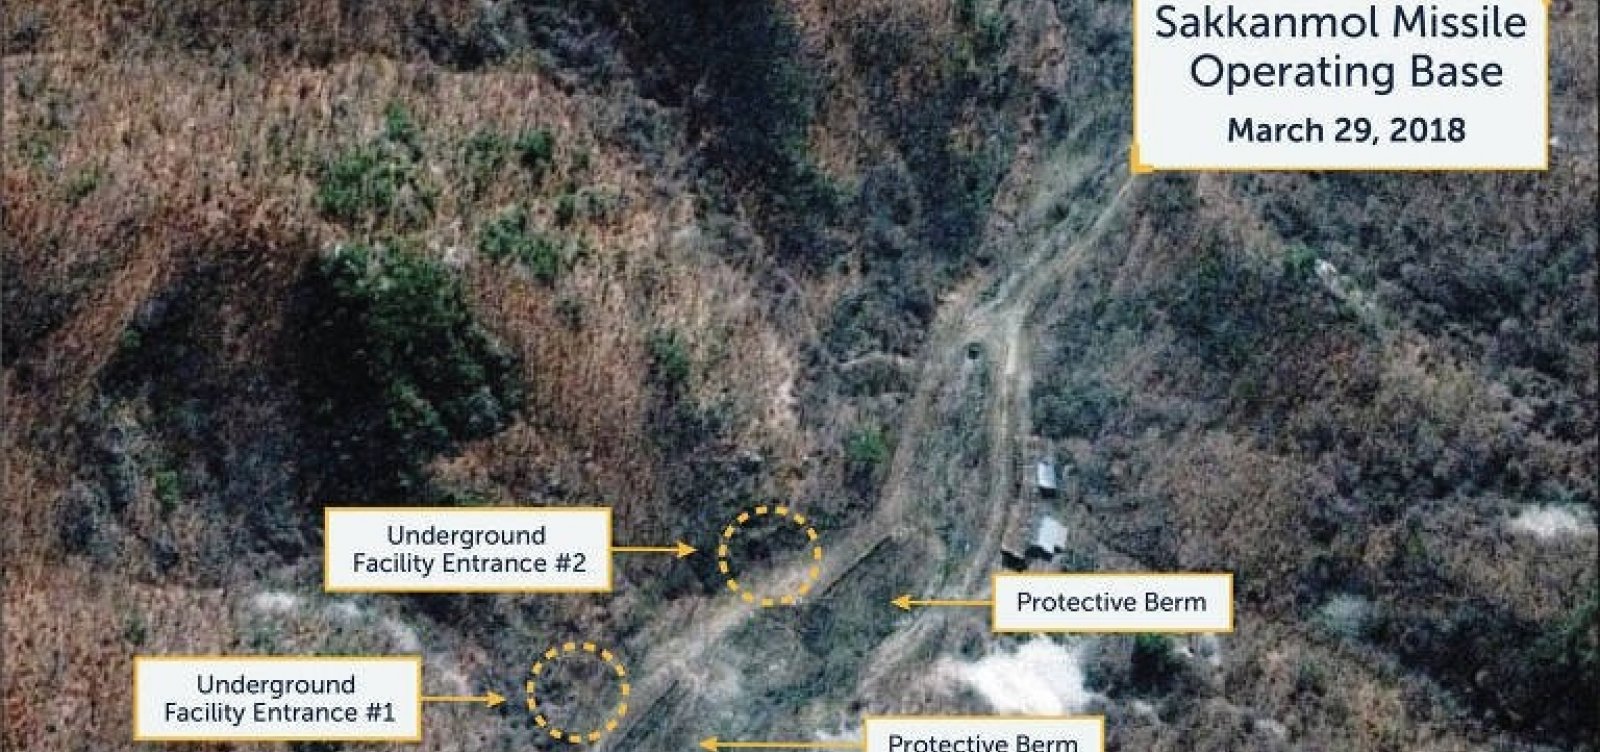 Imagens de satélite encontram 16 bases secretas de mísseis na Coreia do Norte, diz jornal